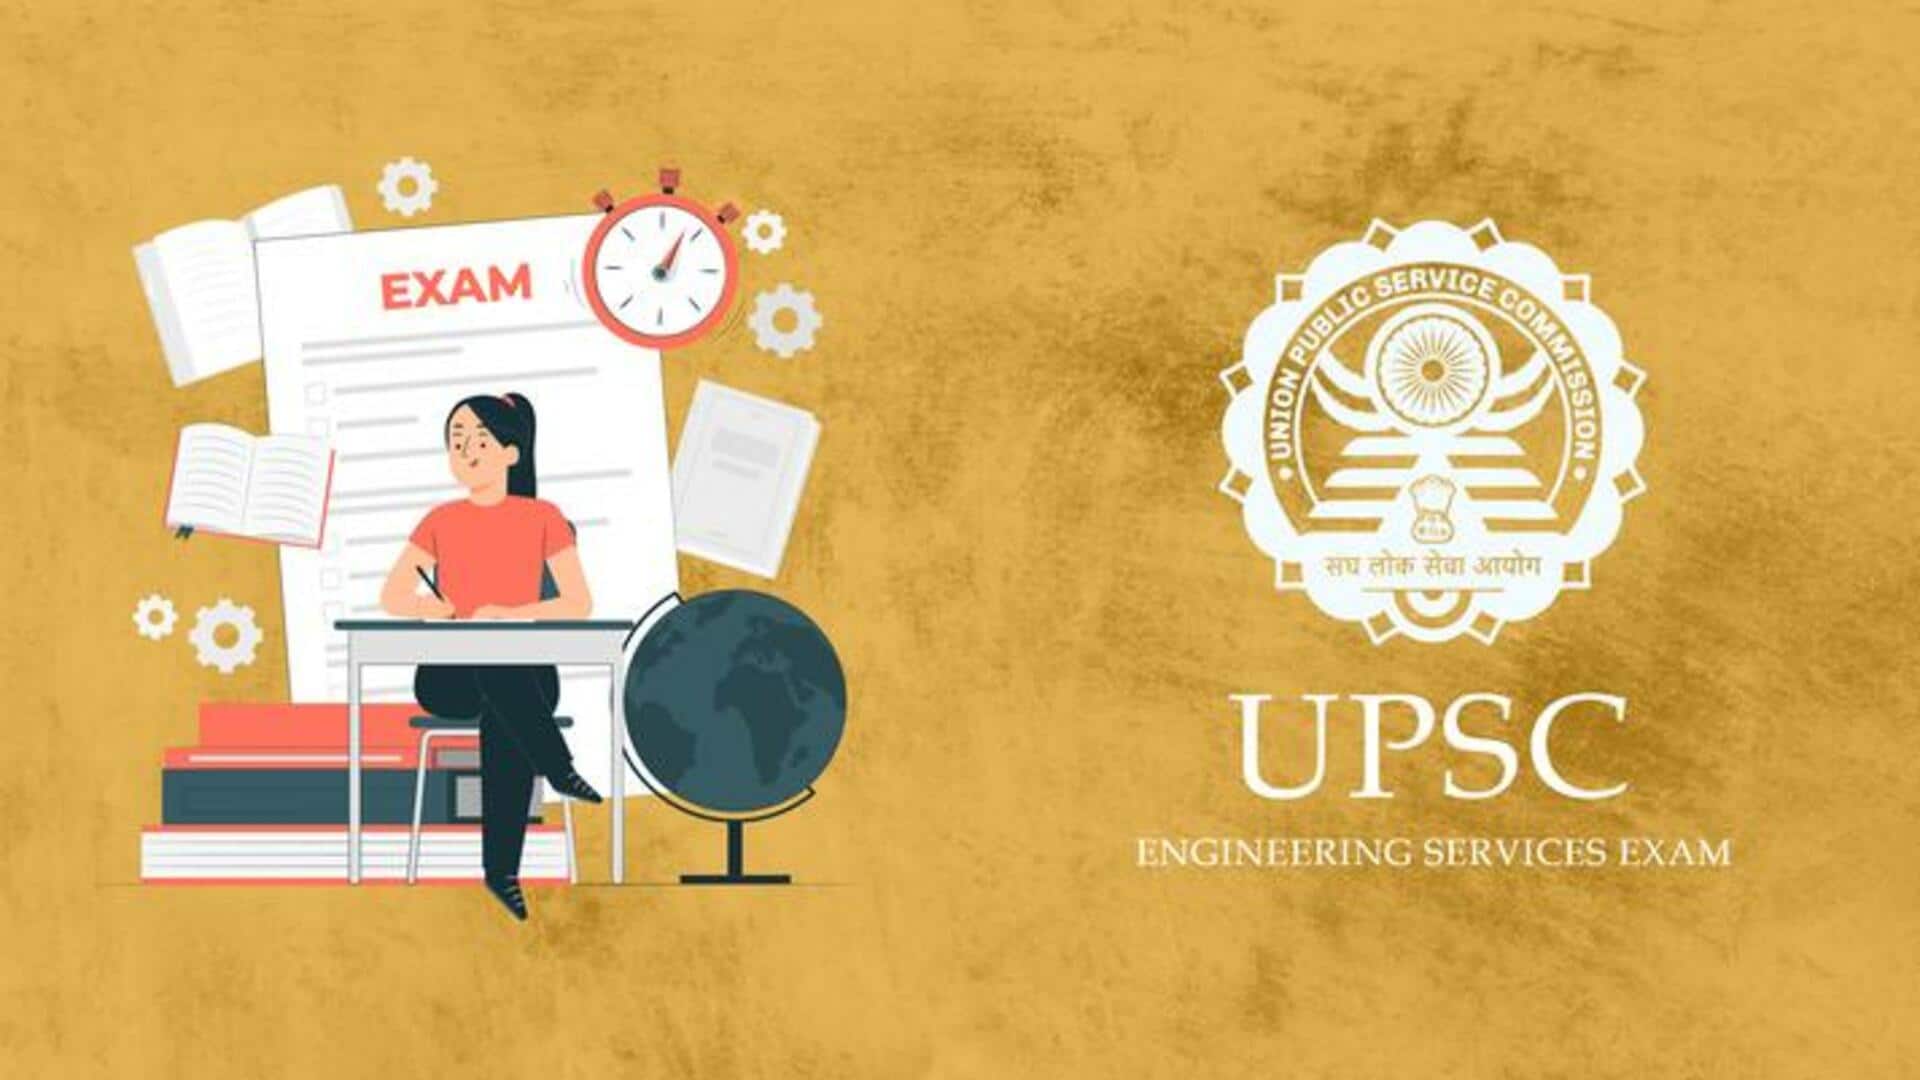 UPSC परीक्षा से जुड़े ये मिथक उम्मीदवारों में बढ़ाते हैं तनाव, जानिए इनकी सच्चाई 